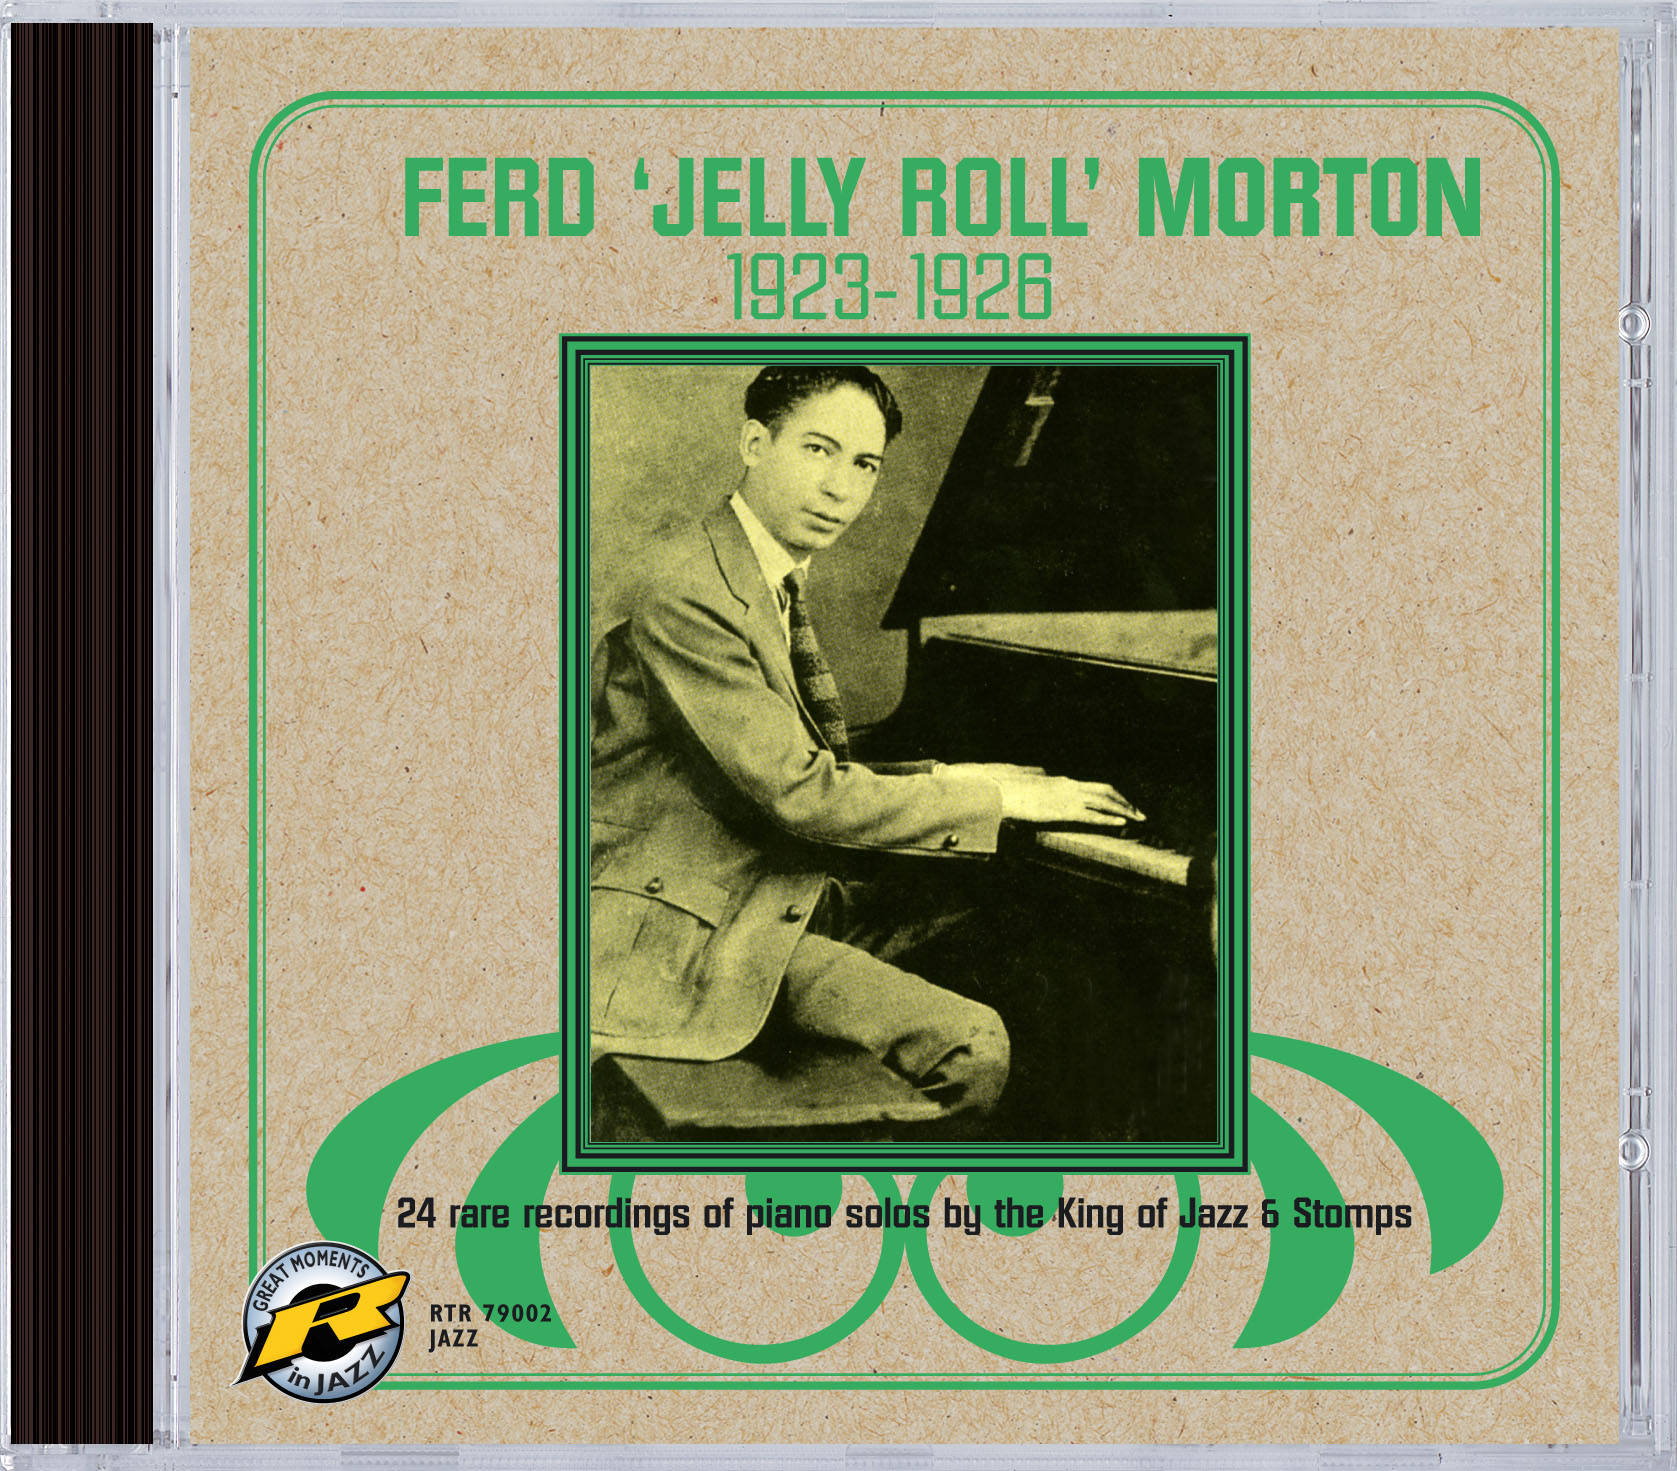 King Of Jazz Ferdinand Jelly Roll Morton Wallpaper